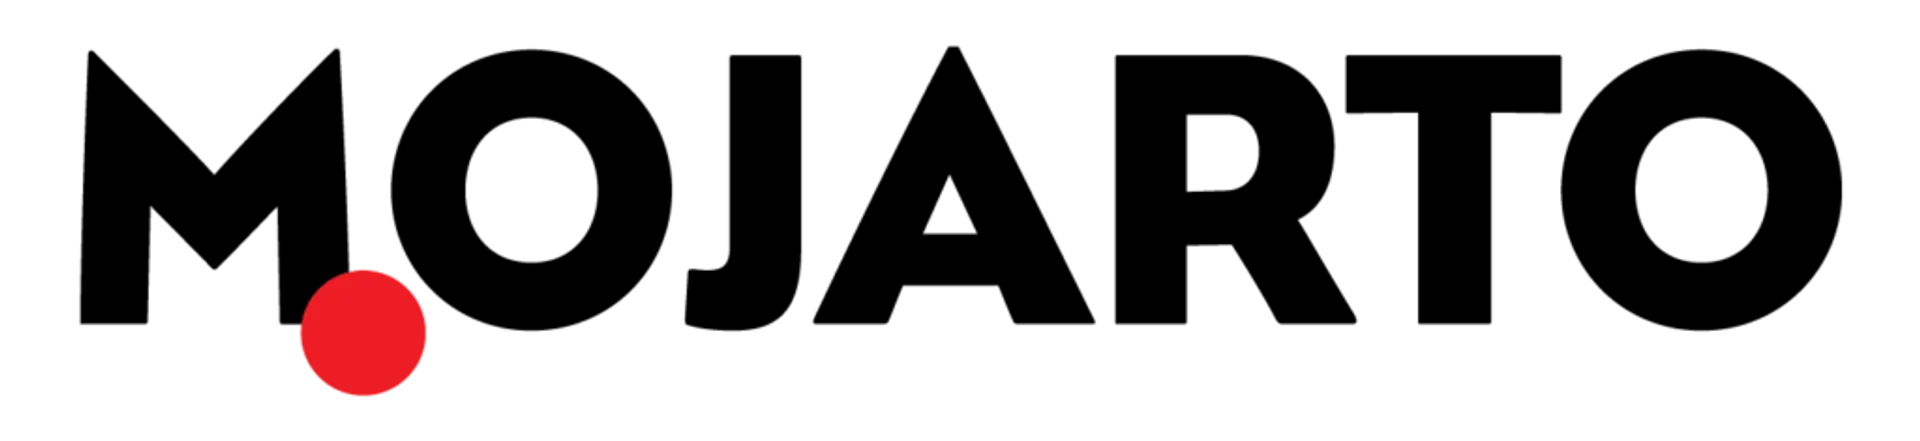 MOJARTO logo. Current weekly ad